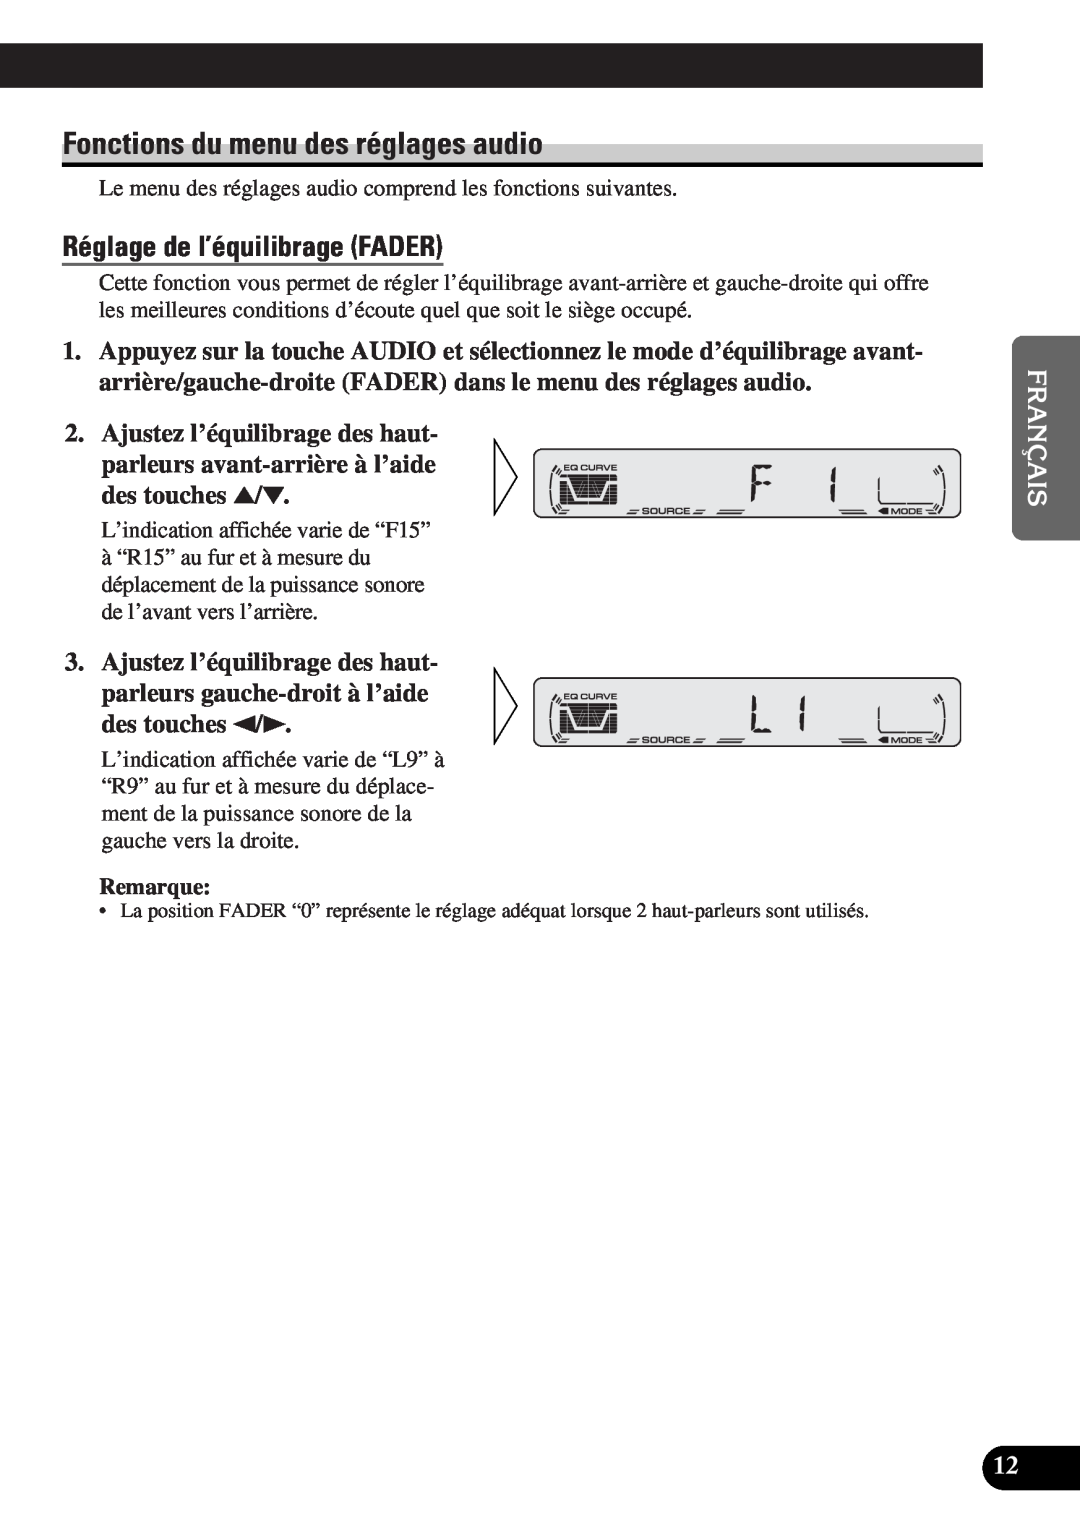 Pioneer DEH-12 operation manual Fonctions du menu des réglages audio, Réglage de l’équilibrage FADER, Remarque 